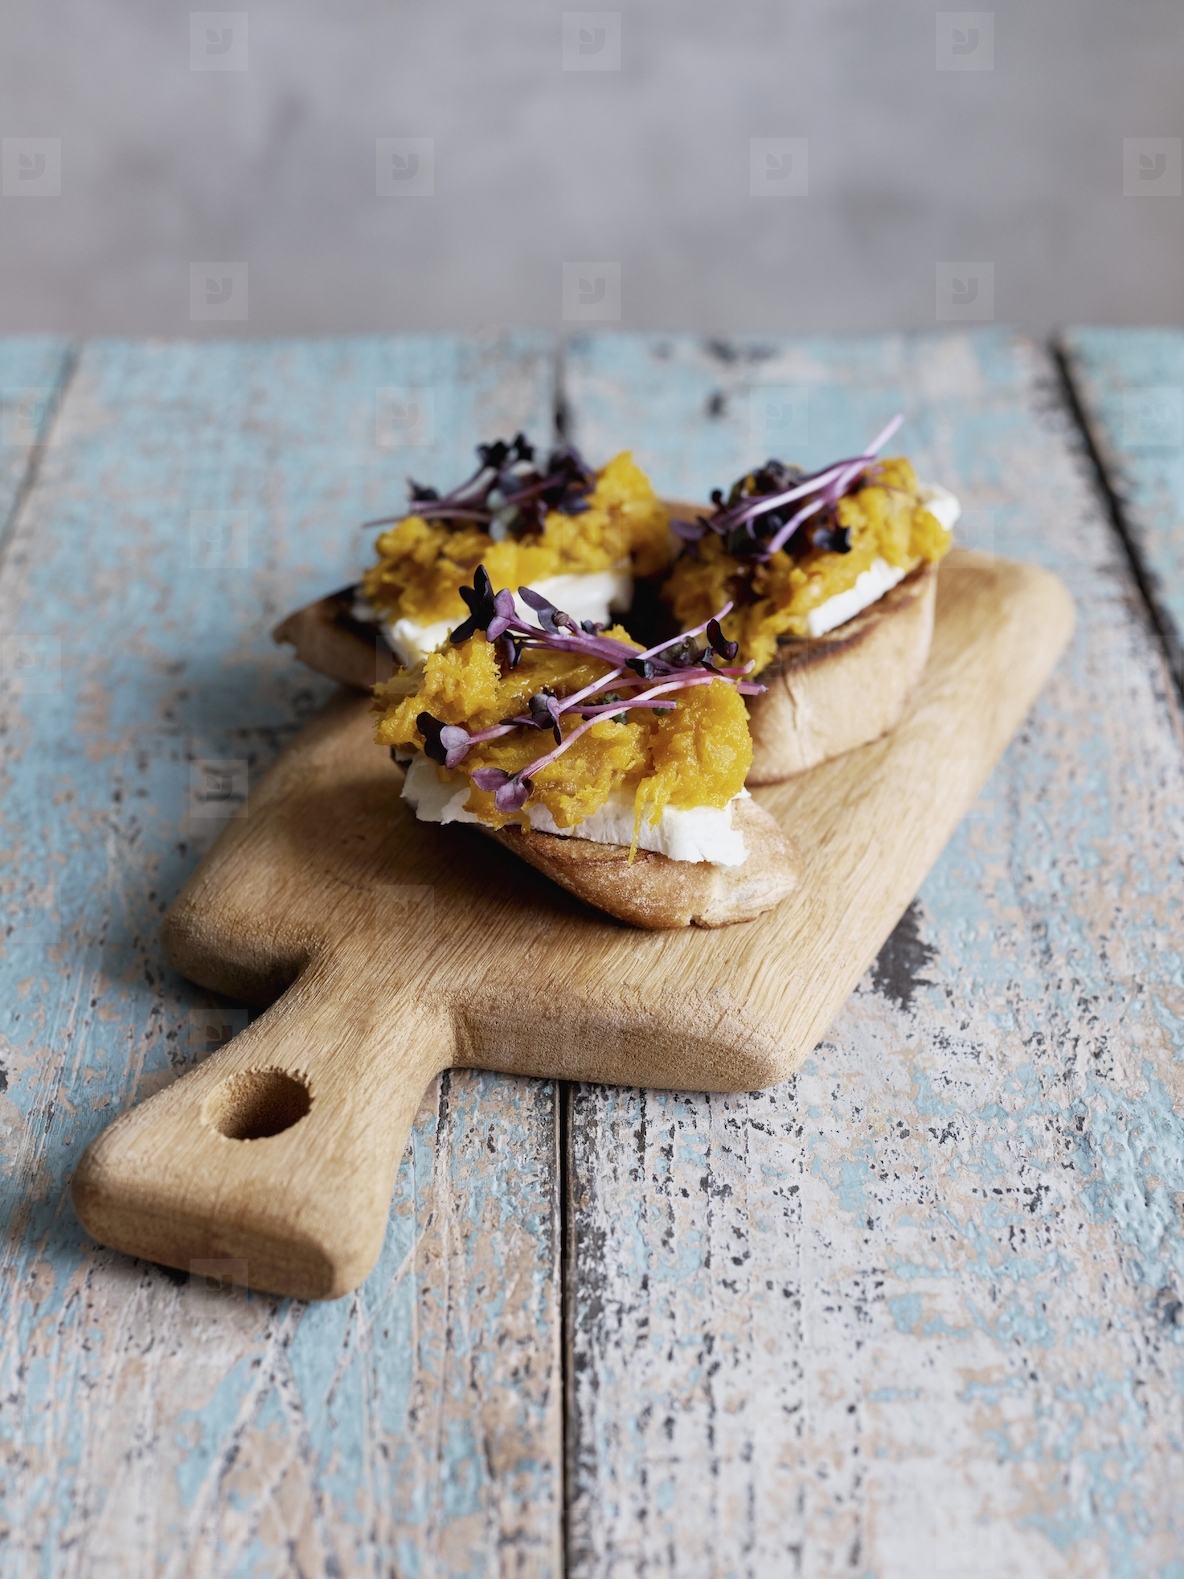 Still life butternut squash and radish microgreens toast appetizer on cutting board